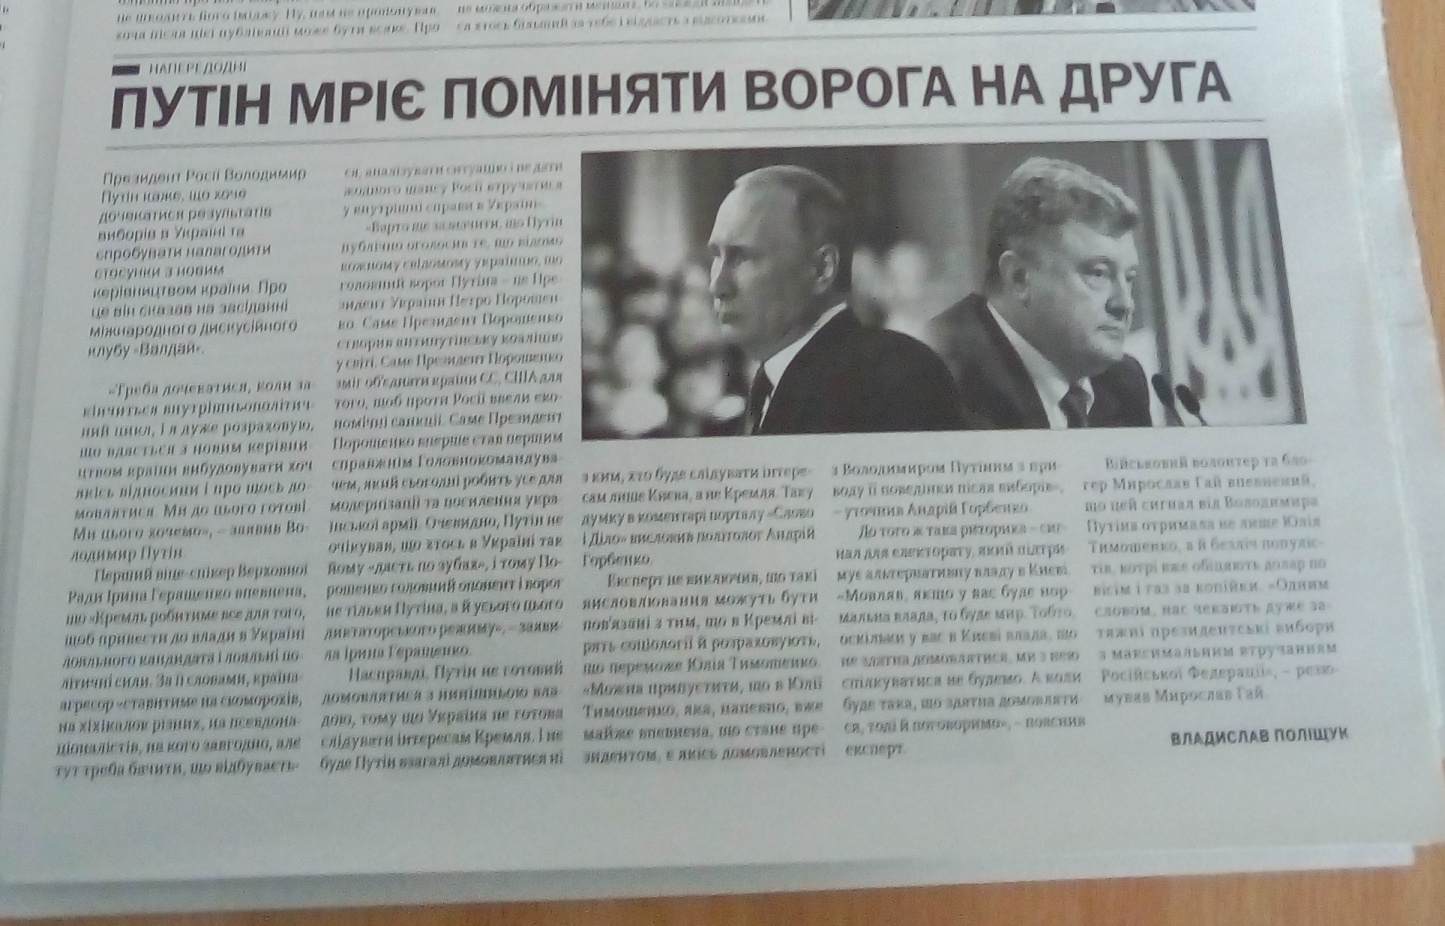 24.12.18. Tymoshenko black piar gazety 12